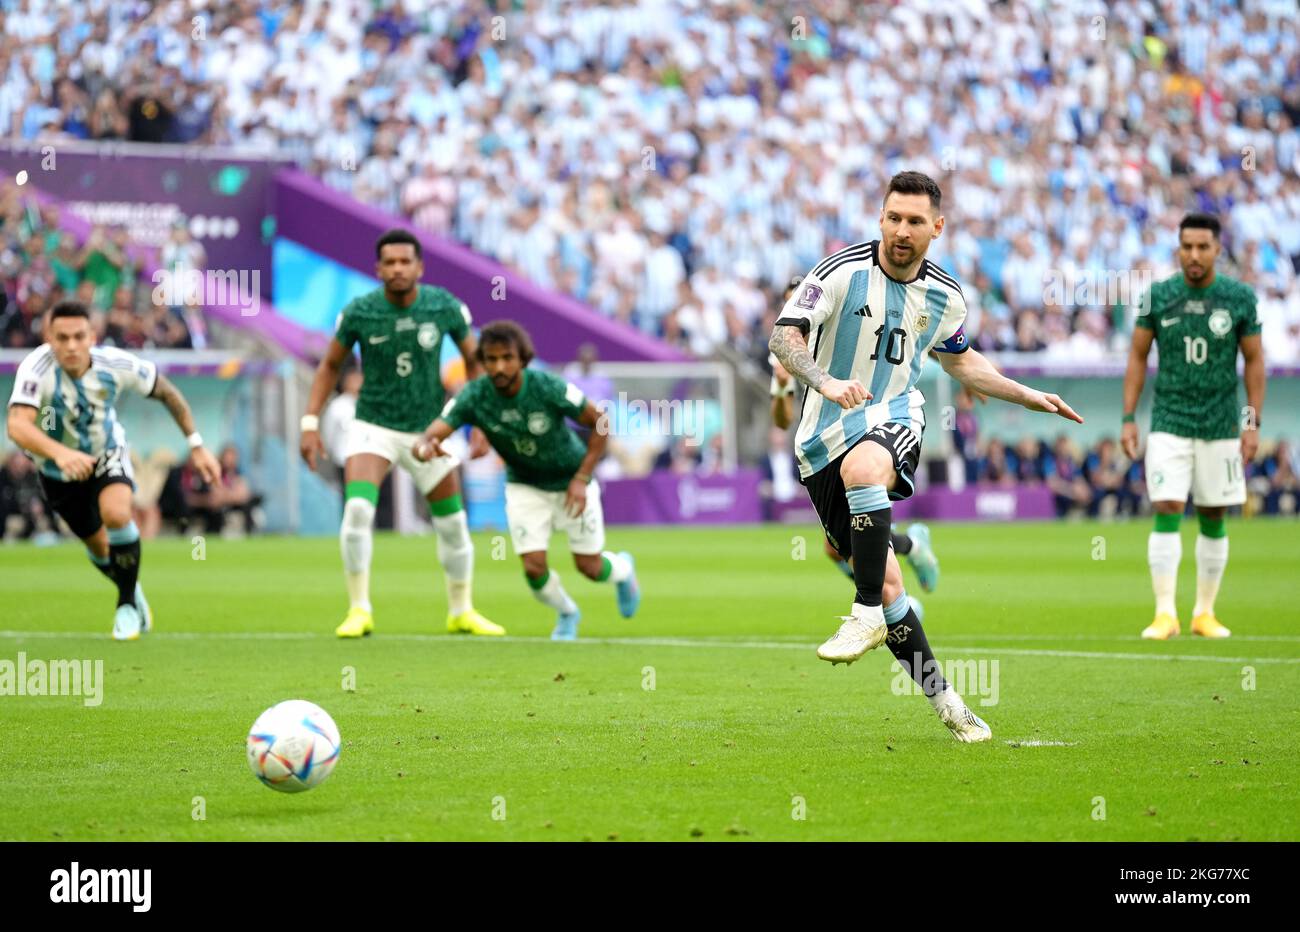 Il Lionel messi argentino segna il primo goal della partita durante la partita di Coppa del mondo FIFA Group C al Lusail Stadium di Lusail, Qatar. Data immagine: Martedì 22 novembre 2022. Foto Stock